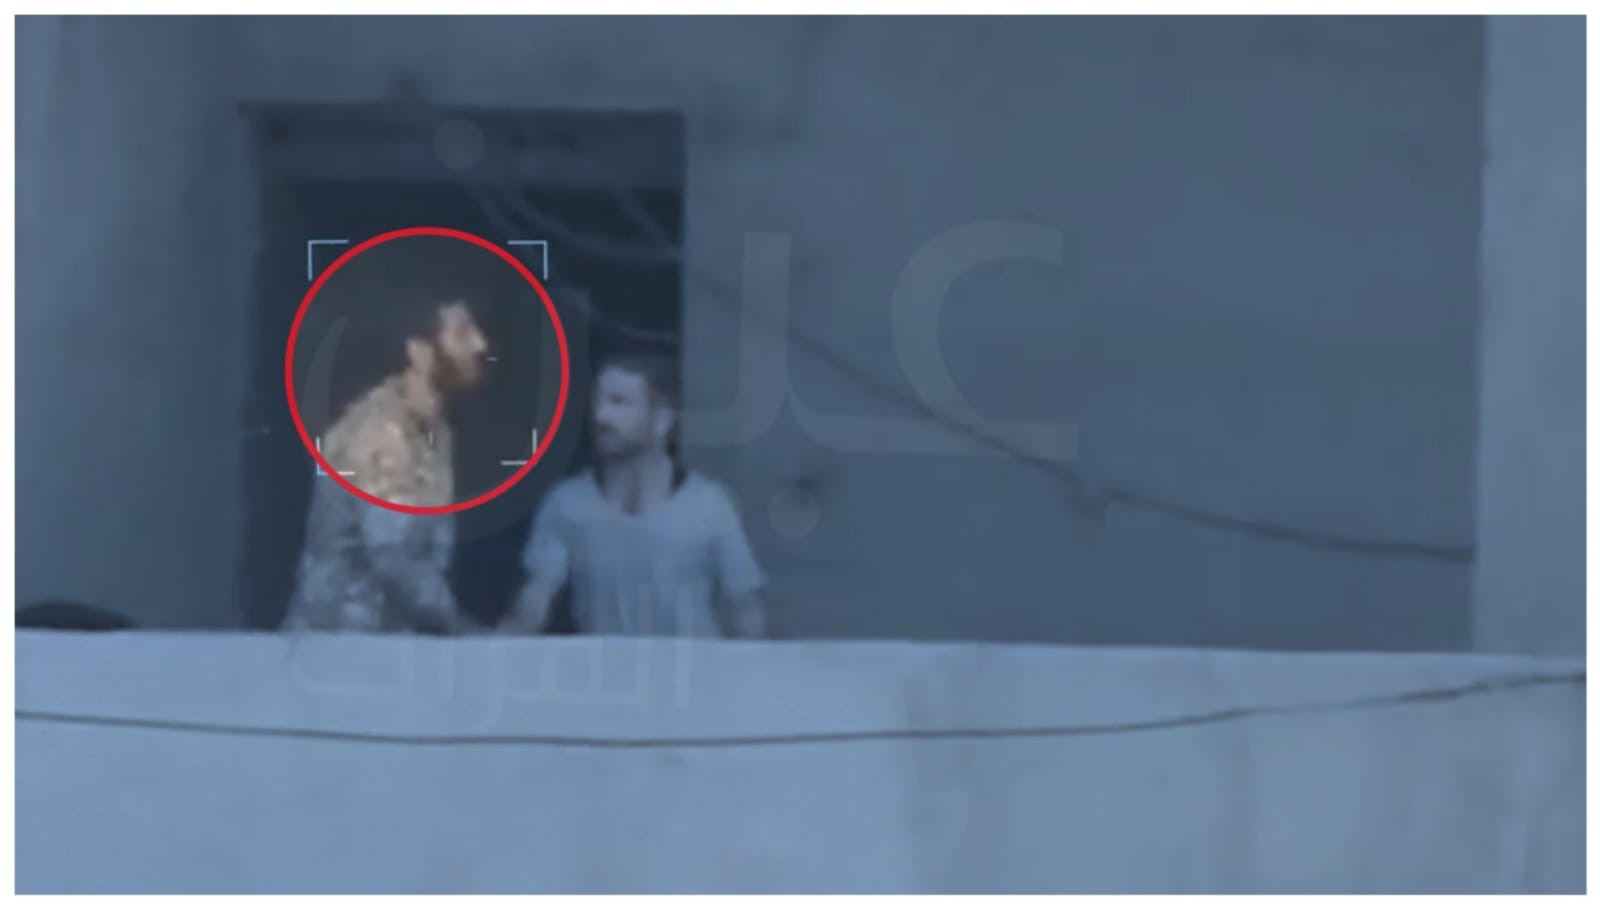 يظهر "الحاج عسكر" الذي يتزعم ميليشيا "الحرس الثوري" في منطقة البوكمال في مخبأه الجديد بعد حوالي أسبوعين من تواريه عن الأنظار